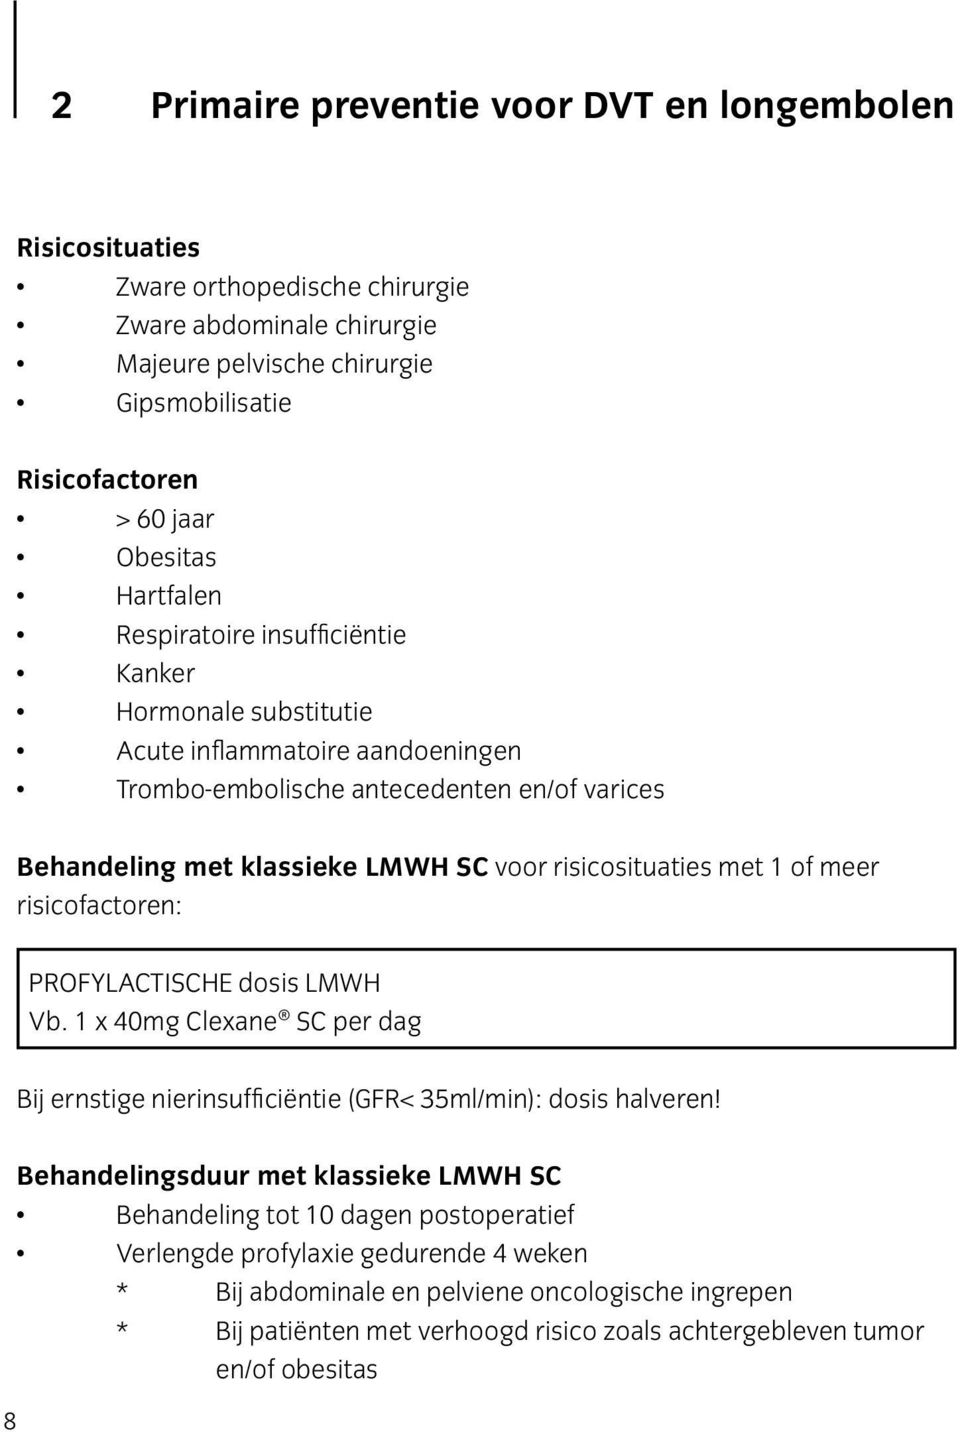 risicosituaties met 1 of meer risicofactoren: PROFYLACTISCHE dosis LMWH Vb. 1 x 40mg Clexane SC per dag Bij ernstige nierinsufficiëntie (GFR< 35ml/min): dosis halveren!